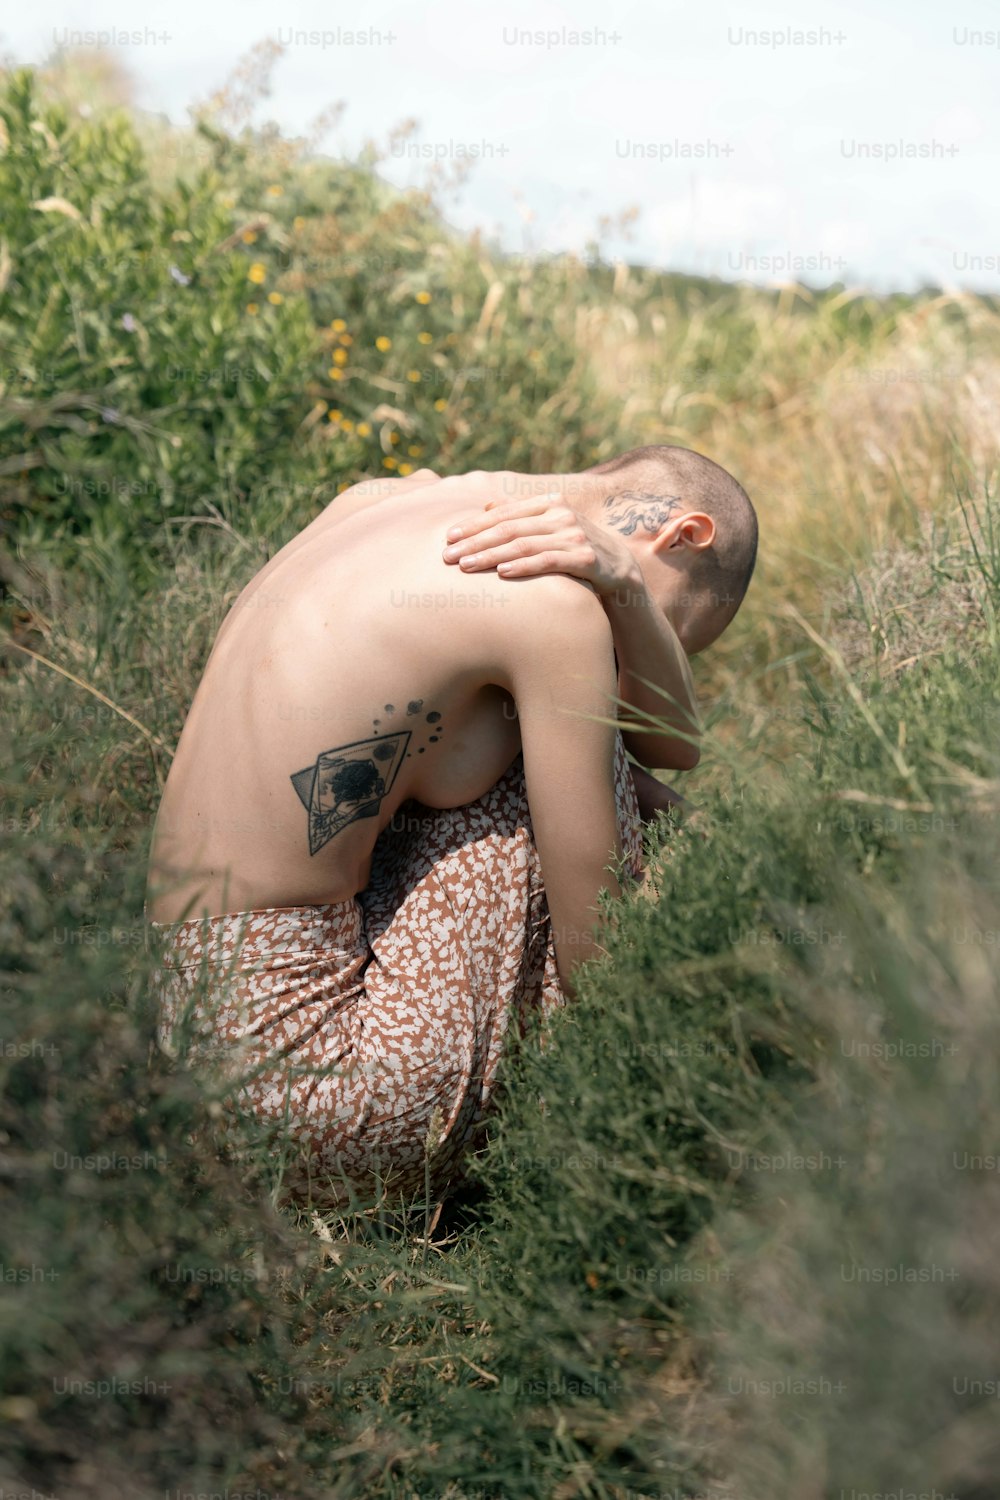 Un homme torse nu dans un champ d’herbes hautes